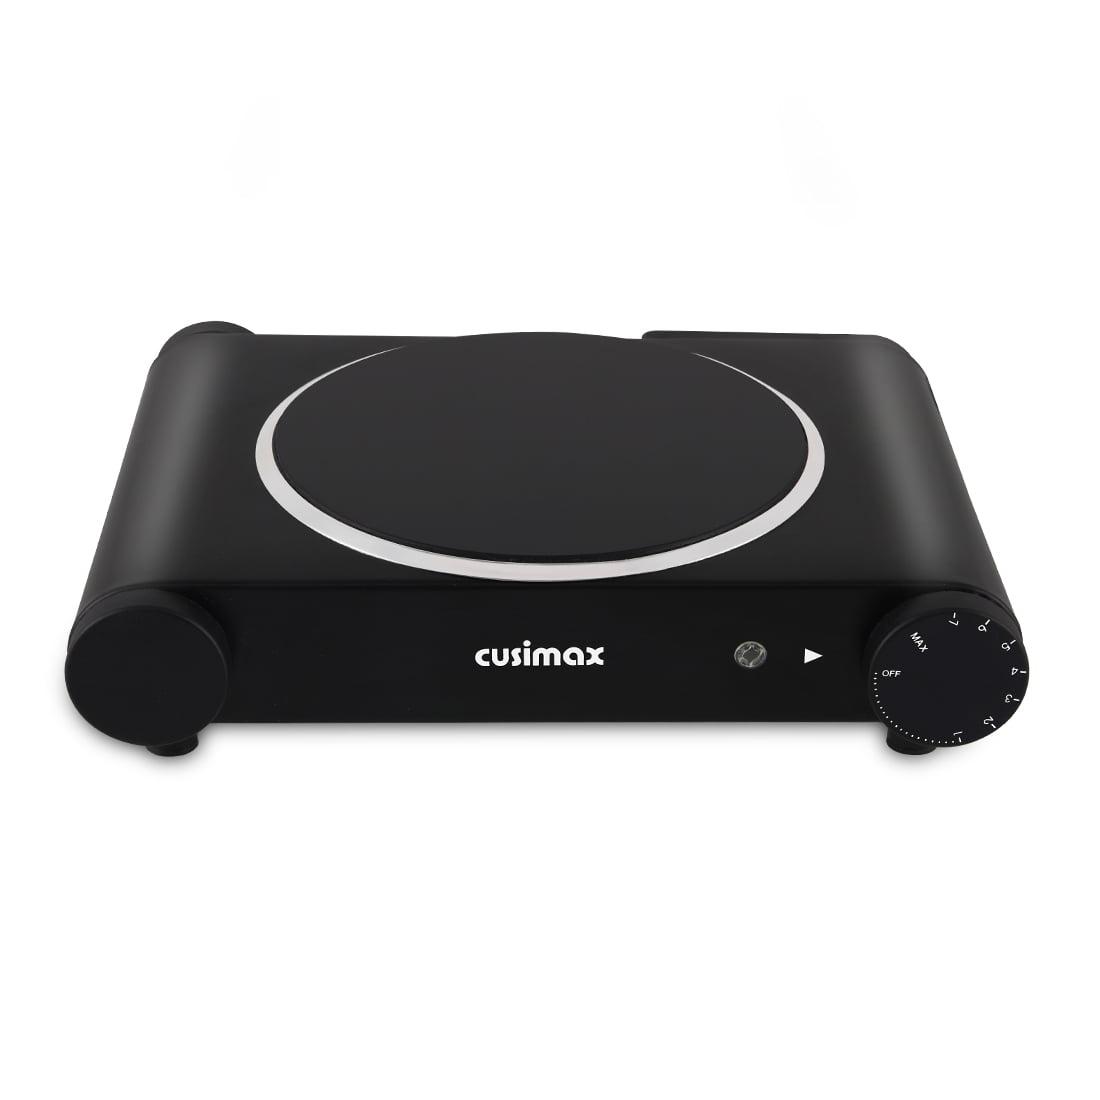 Cusimax CmipB120 Ceramic Hot Plate Portable Electric Cooktop Burner Single/Dual Infrared Burner